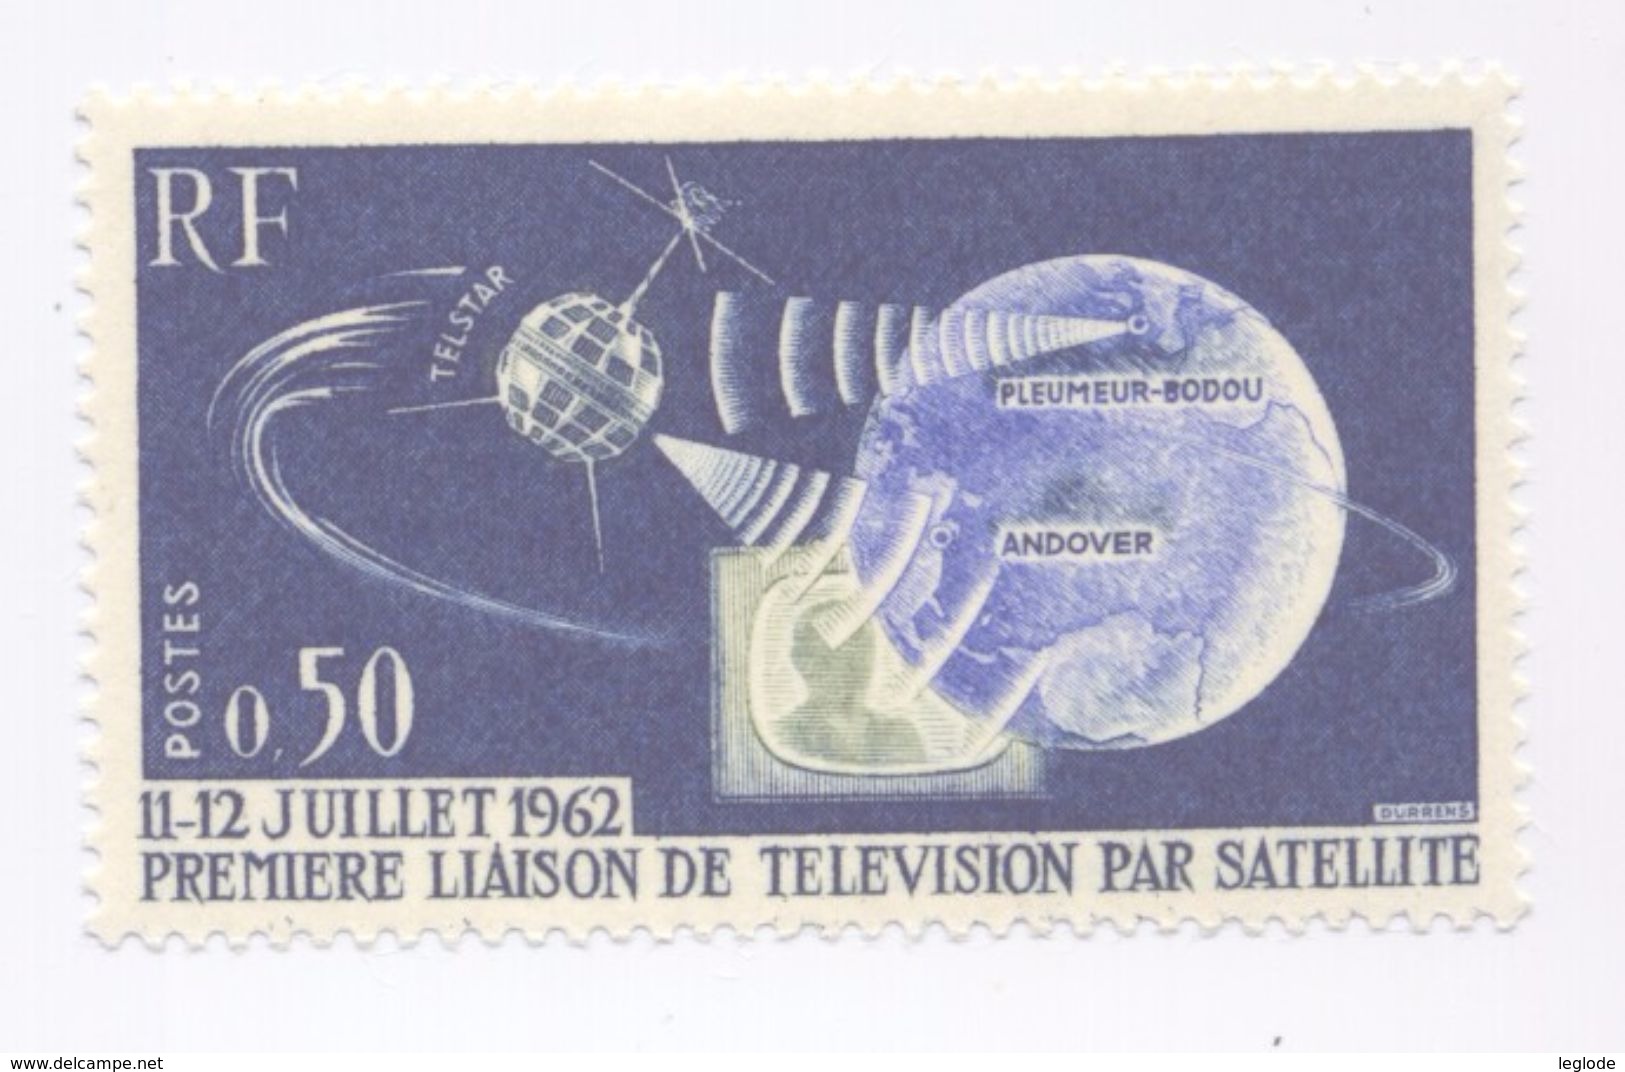 1361 - 1ère Liaison De Télévision Par Satellite (11-12 Juillet 1962 (1962-1963) - Unused Stamps